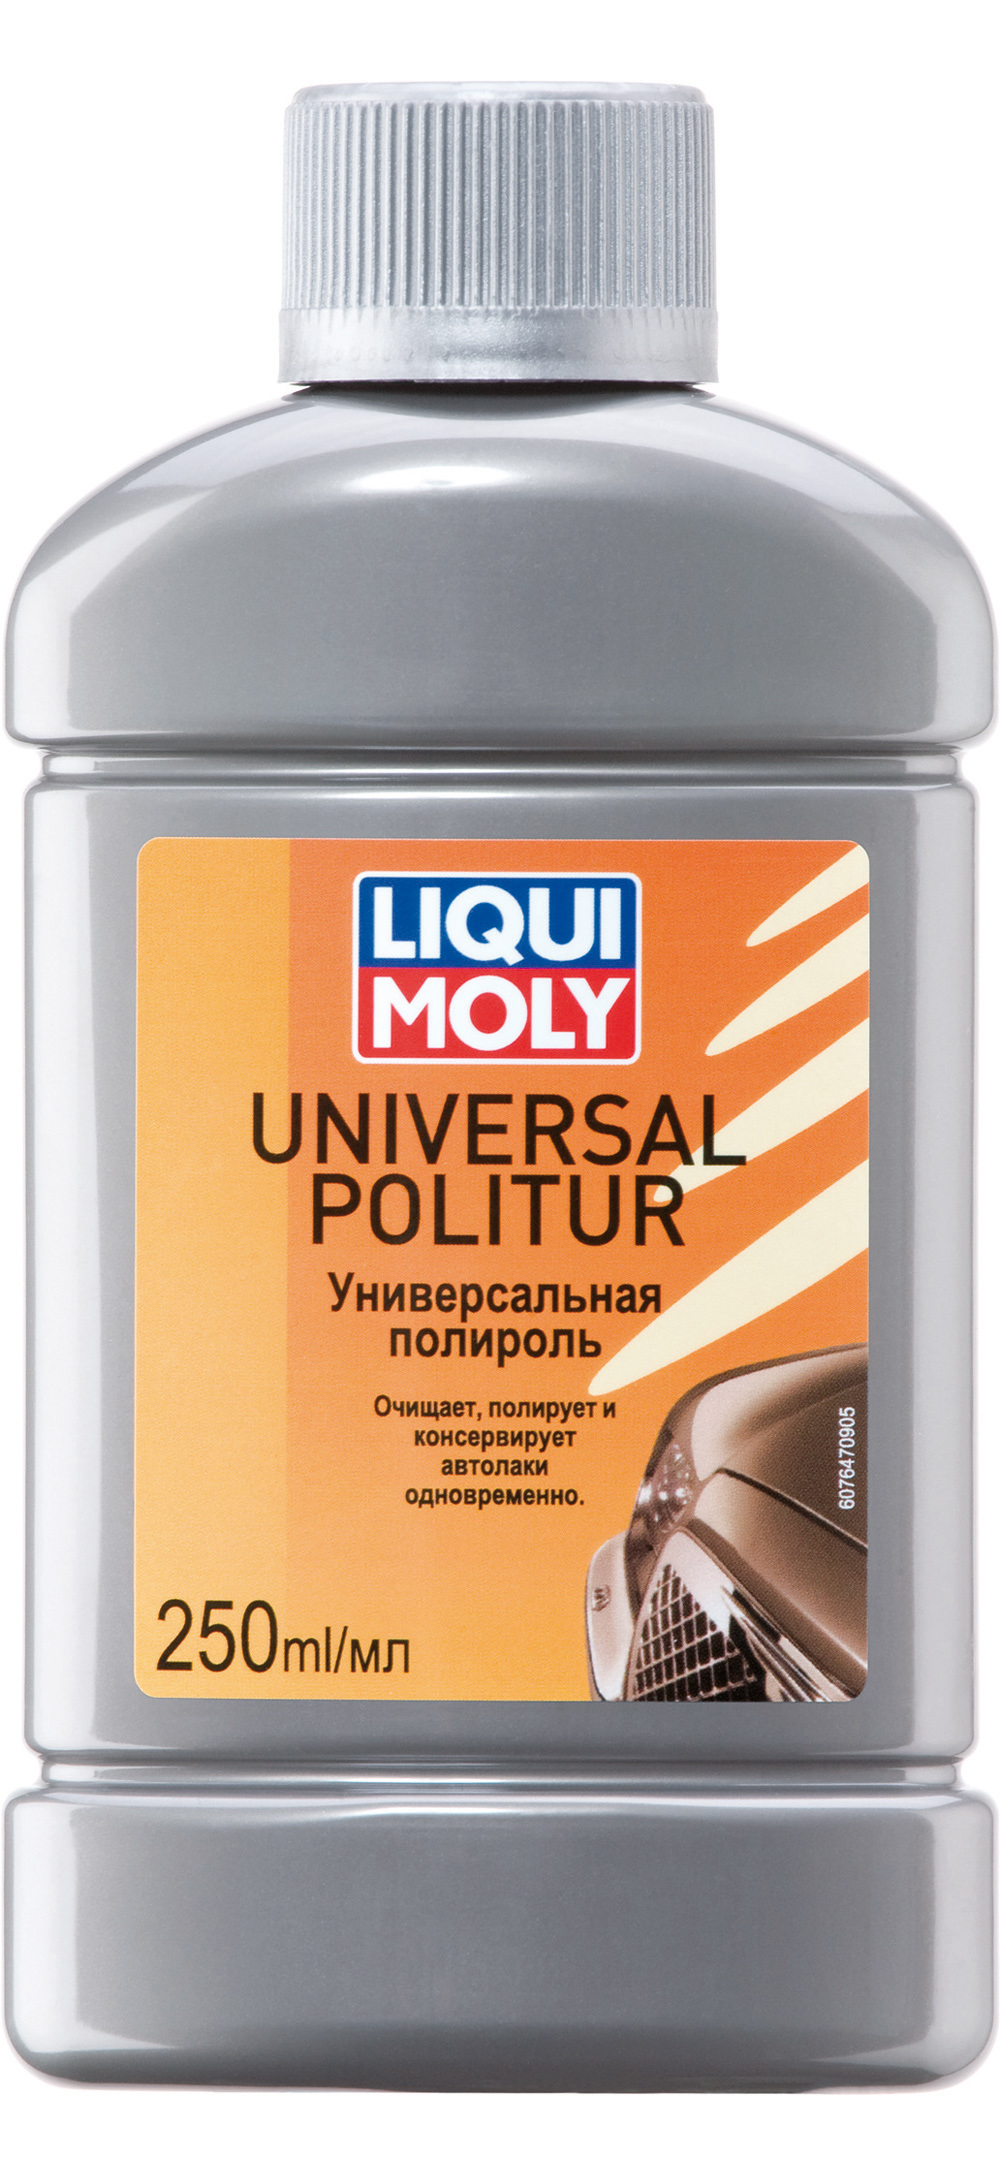 Универсальная полироль LIQUI MOLY Universal Politur (0,25 литра)